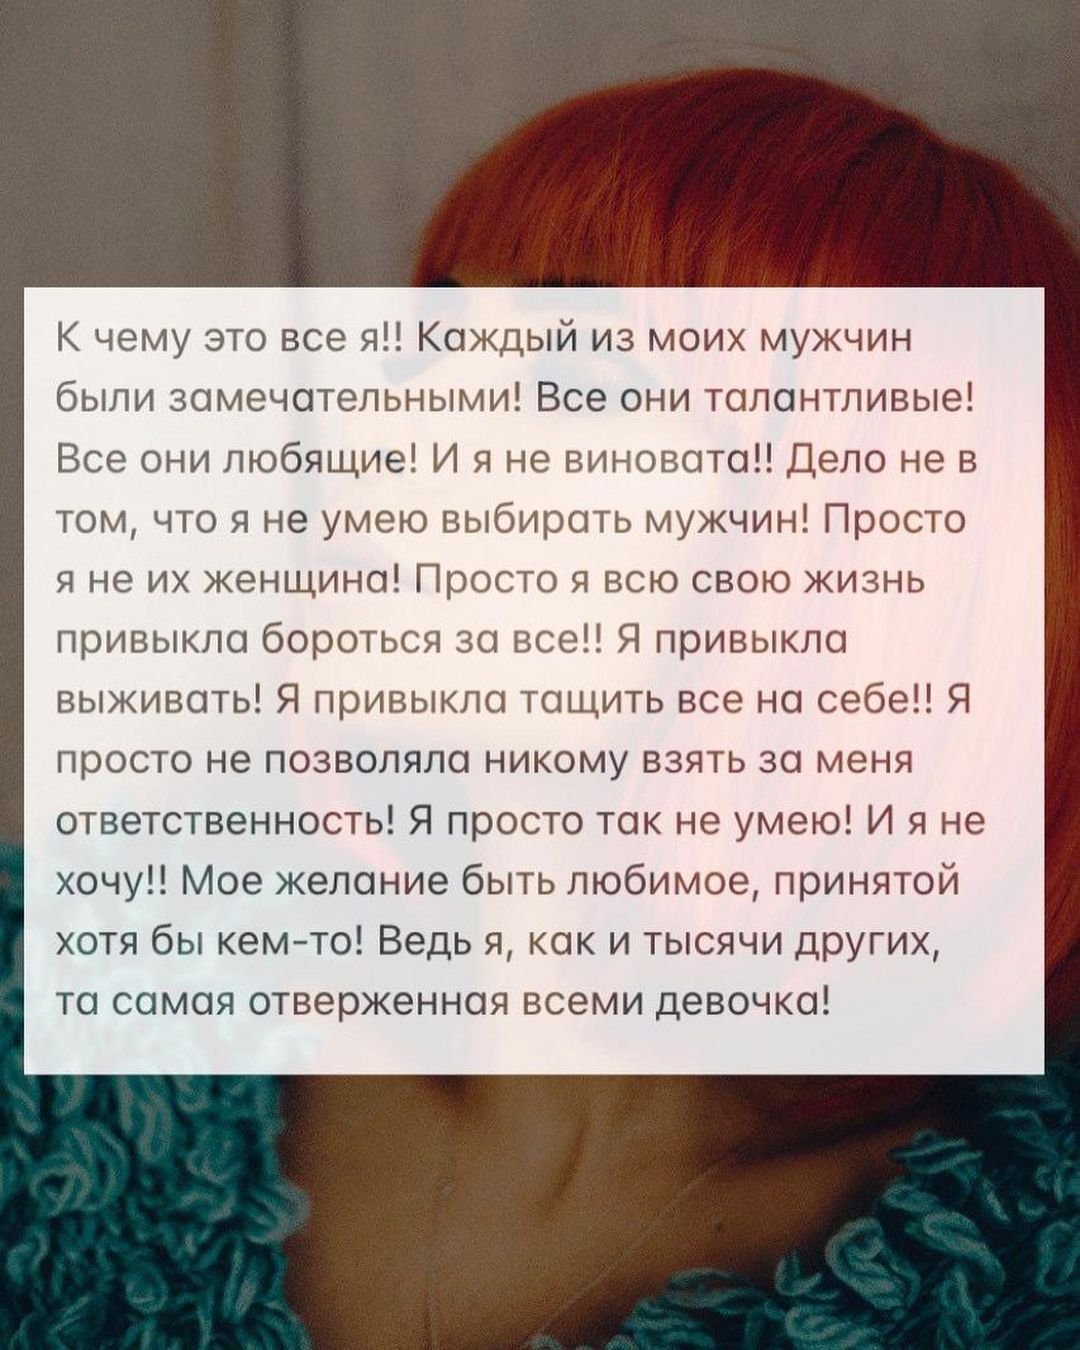 Айза Долматова сообщила, что в младенчестве её сбил автомобиль